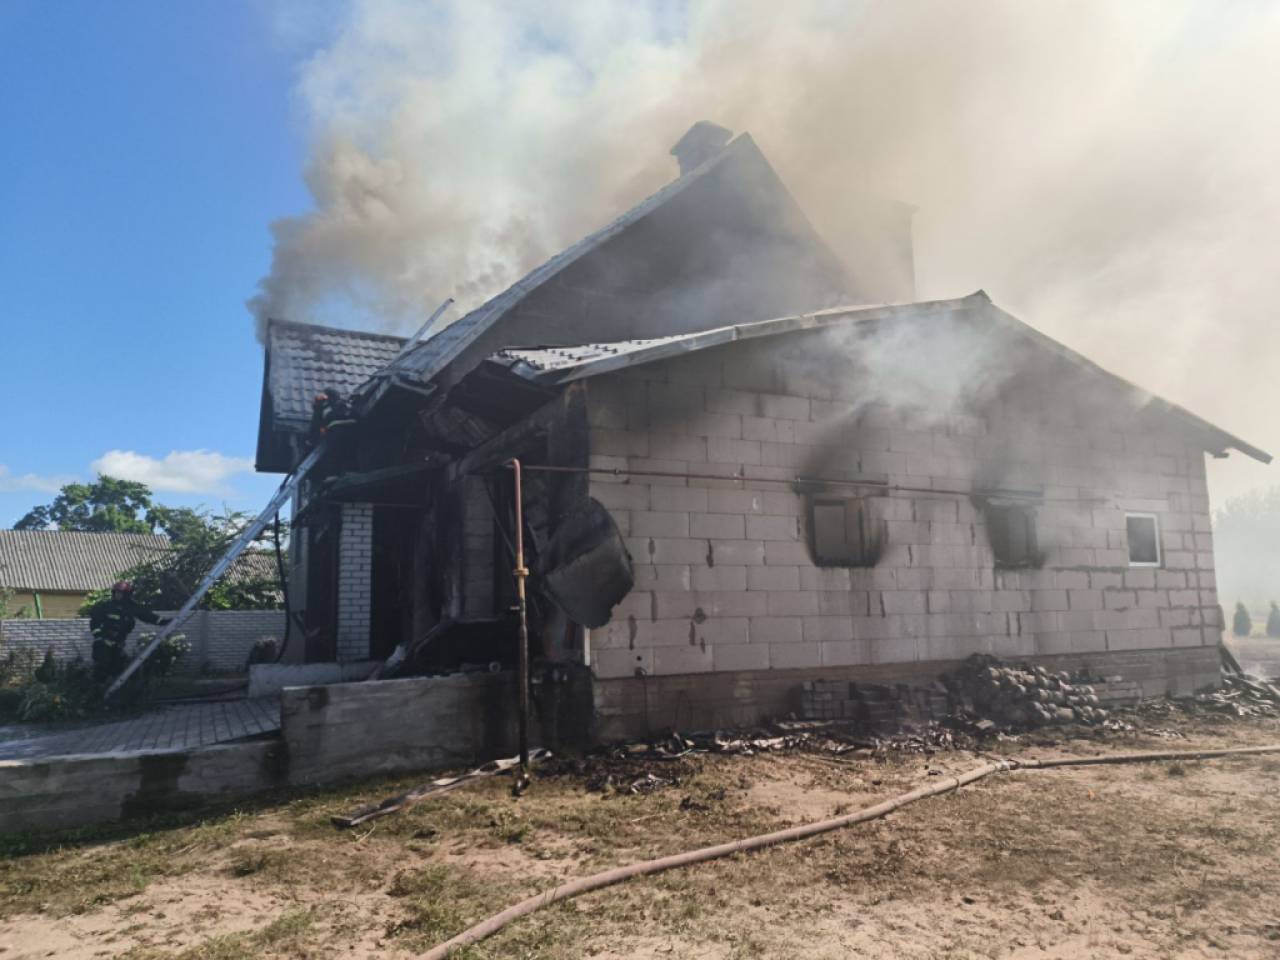 В деревне под Гродно участковый спас детей на пожаре: они даже не подозревали, что горит дом